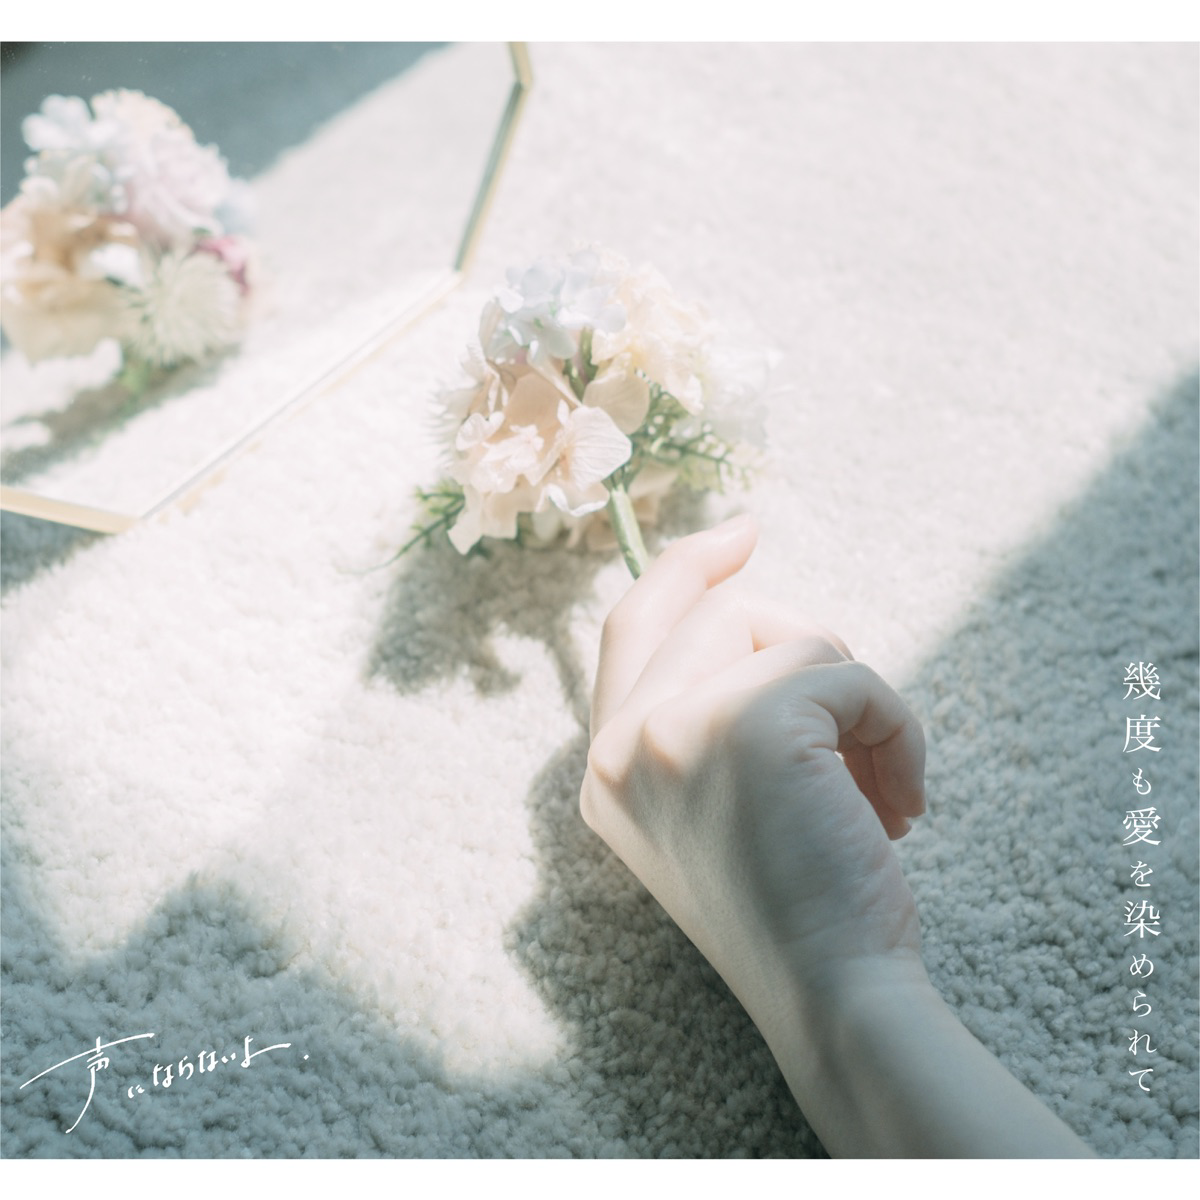 Koeninaranaiyo - White Flower Cover